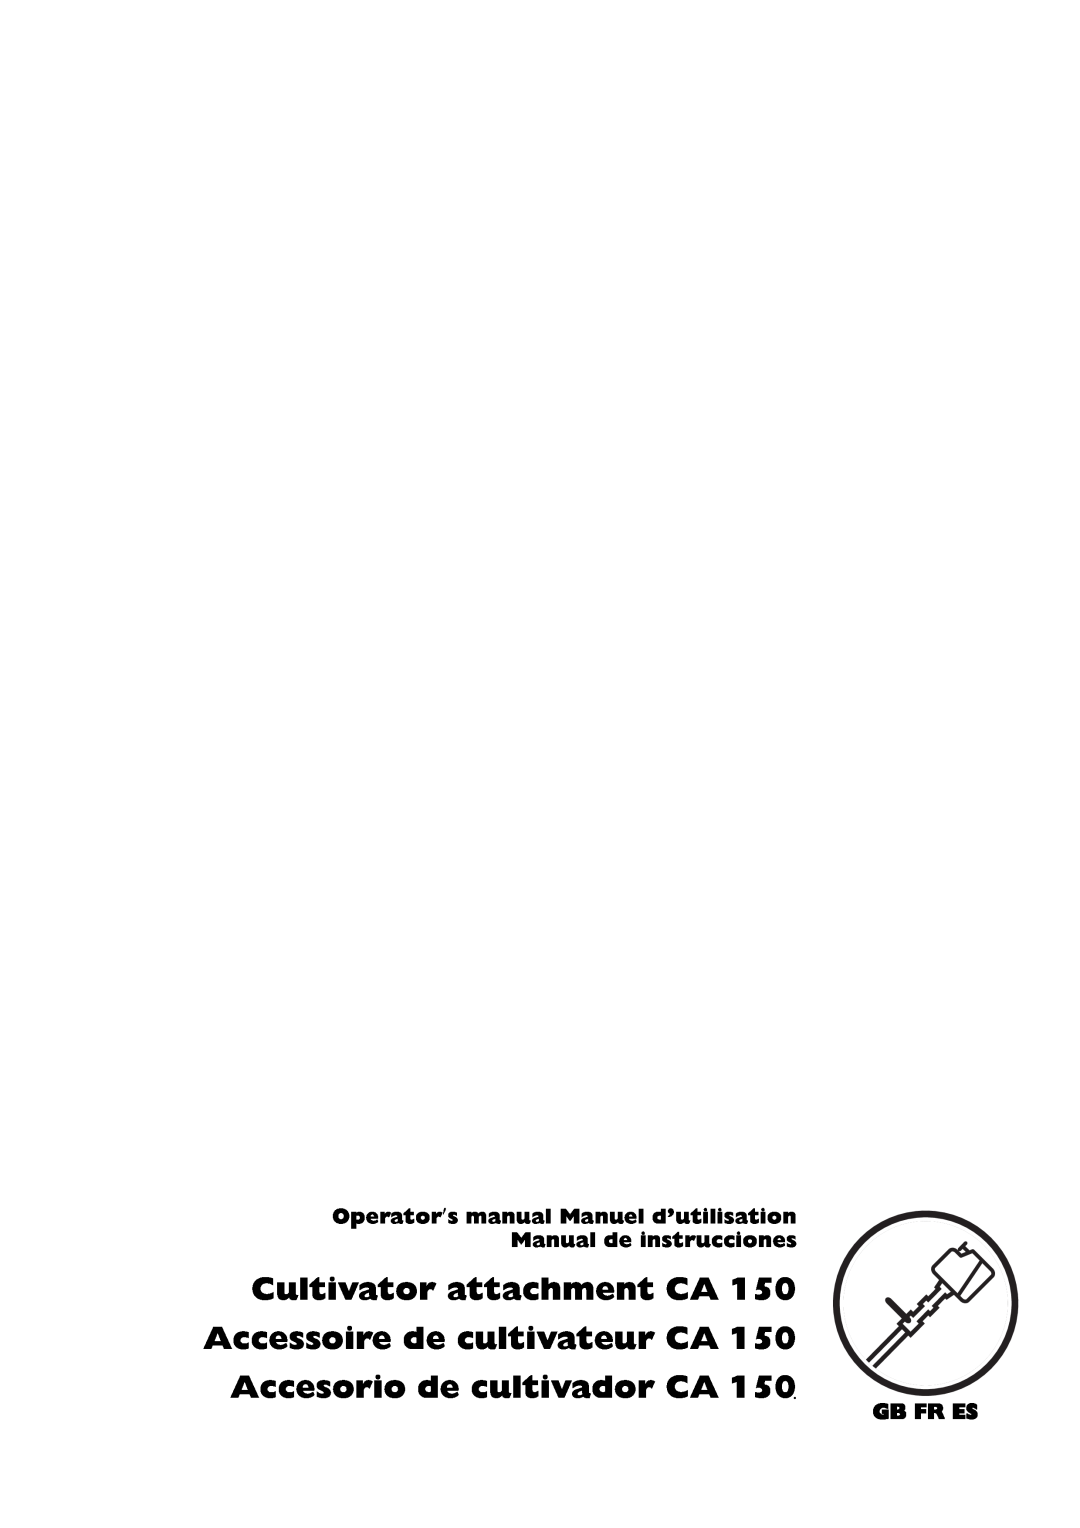 Husqvarna CA 150 manuel dutilisation Cultivator attachment CA Accessoire de cultivateur CA, Accesorio de cultivador CA 